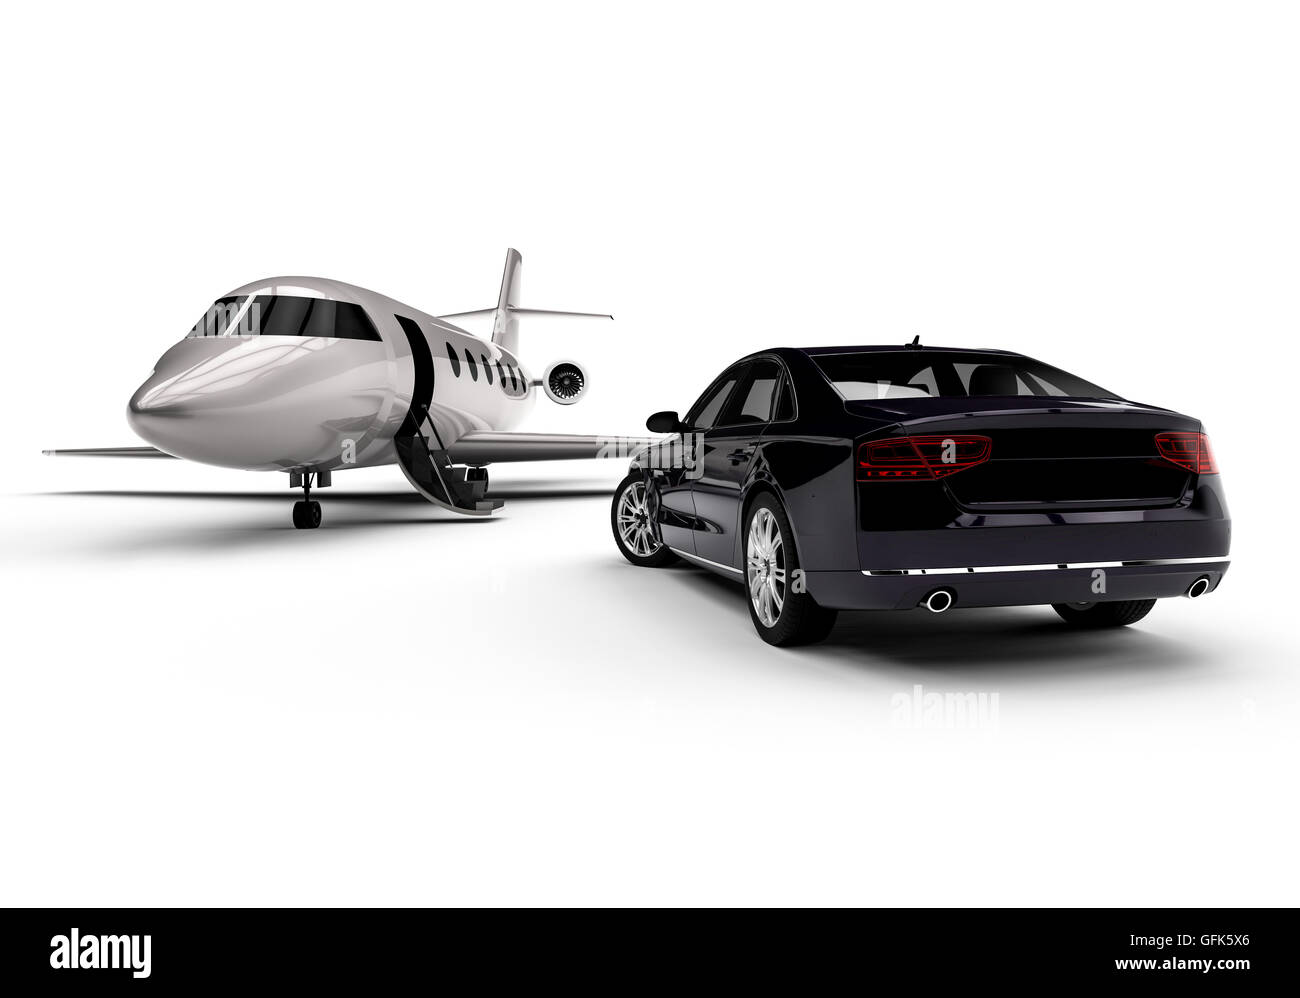 L'image de rendu 3D représentant un jet privé avec une limousine garée Banque D'Images